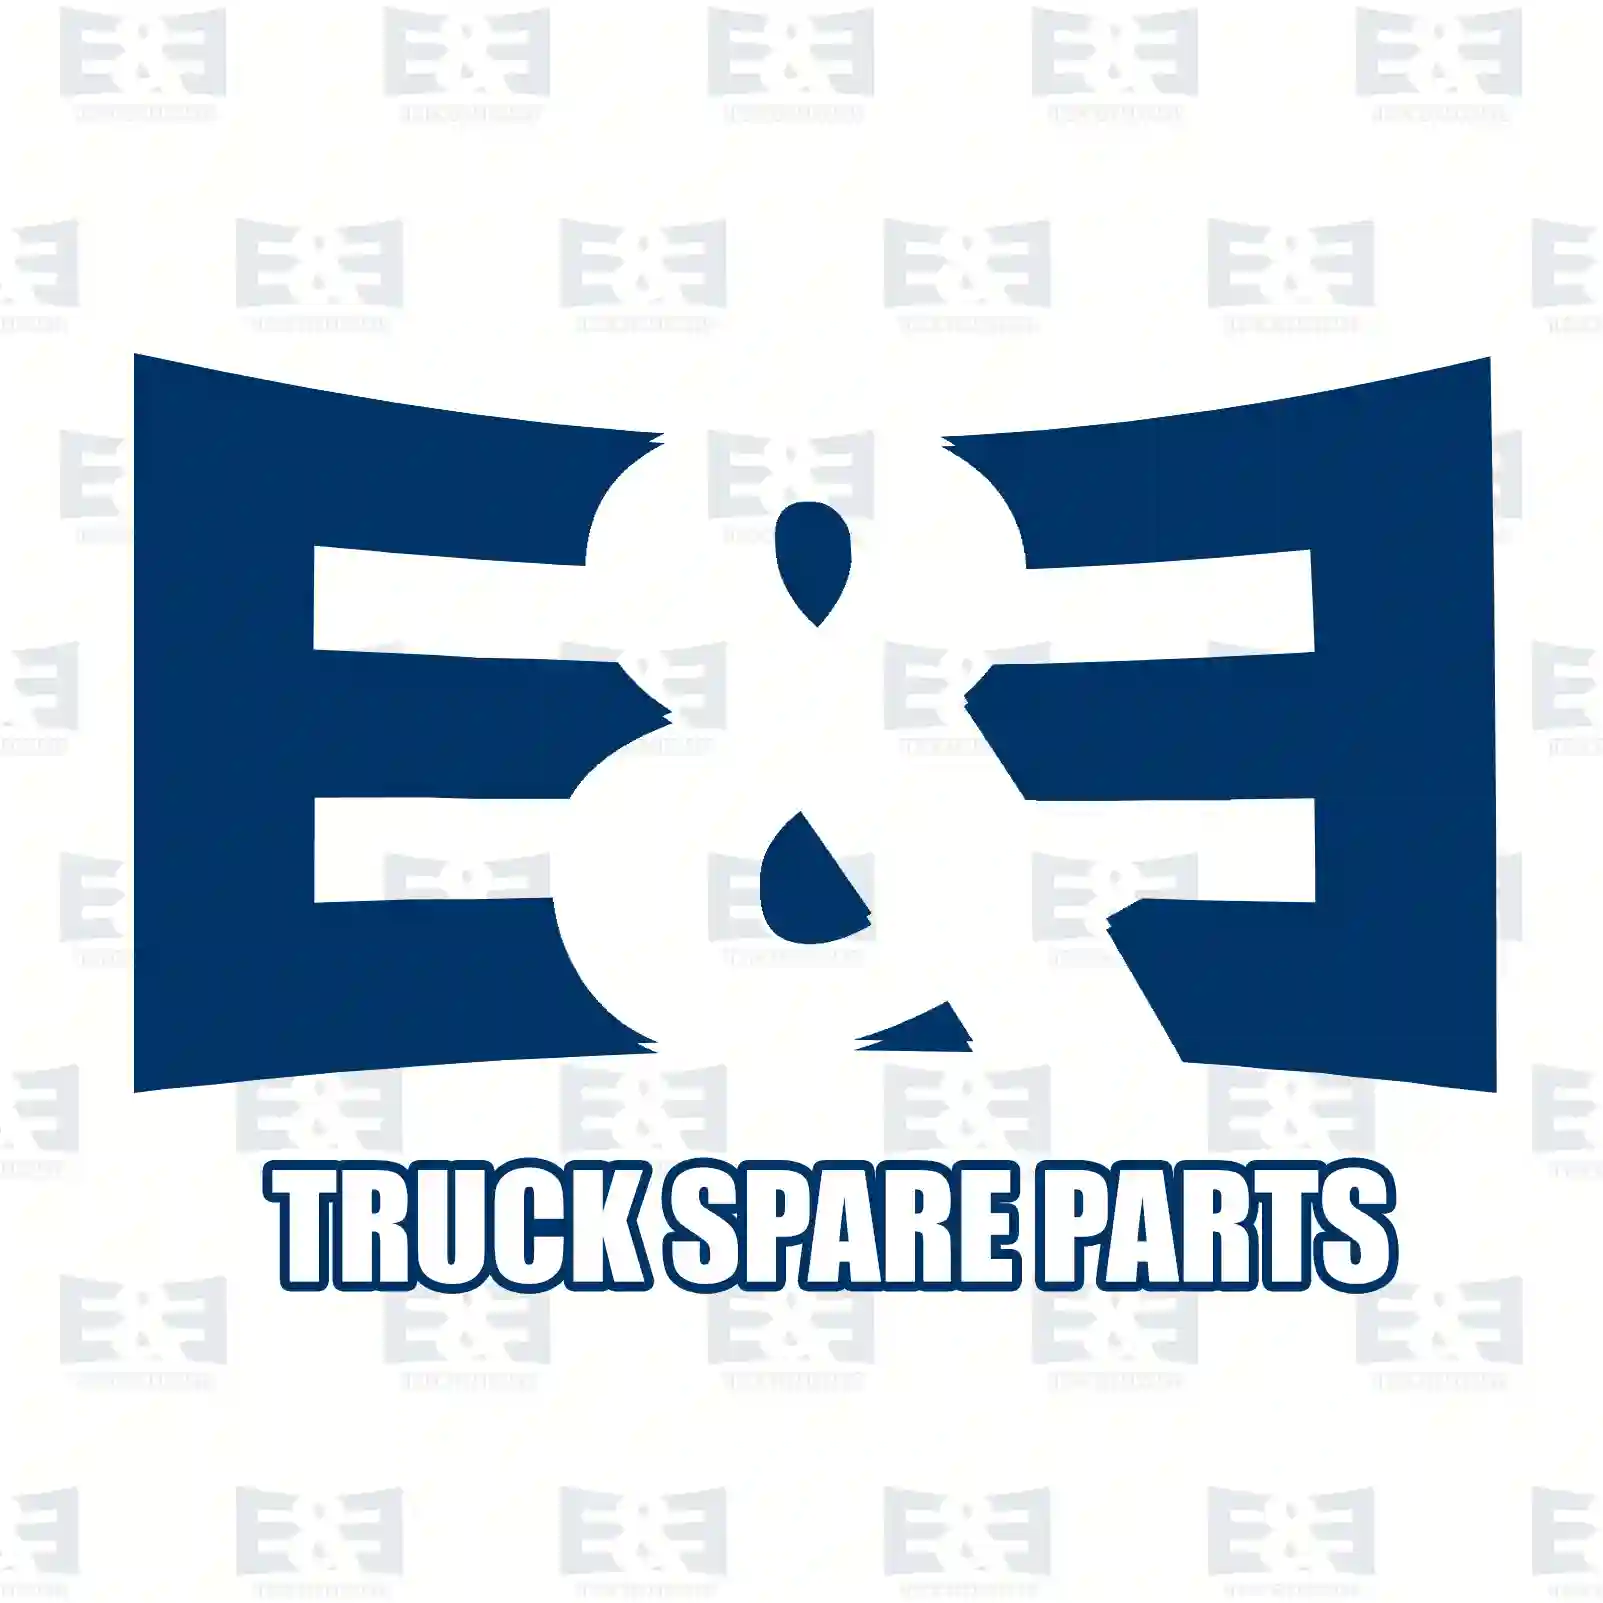 Fan clutch, 2E2202011, 2003922 ||  2E2202011 E&E Truck Spare Parts | Truck Spare Parts, Auotomotive Spare Parts Fan clutch, 2E2202011, 2003922 ||  2E2202011 E&E Truck Spare Parts | Truck Spare Parts, Auotomotive Spare Parts